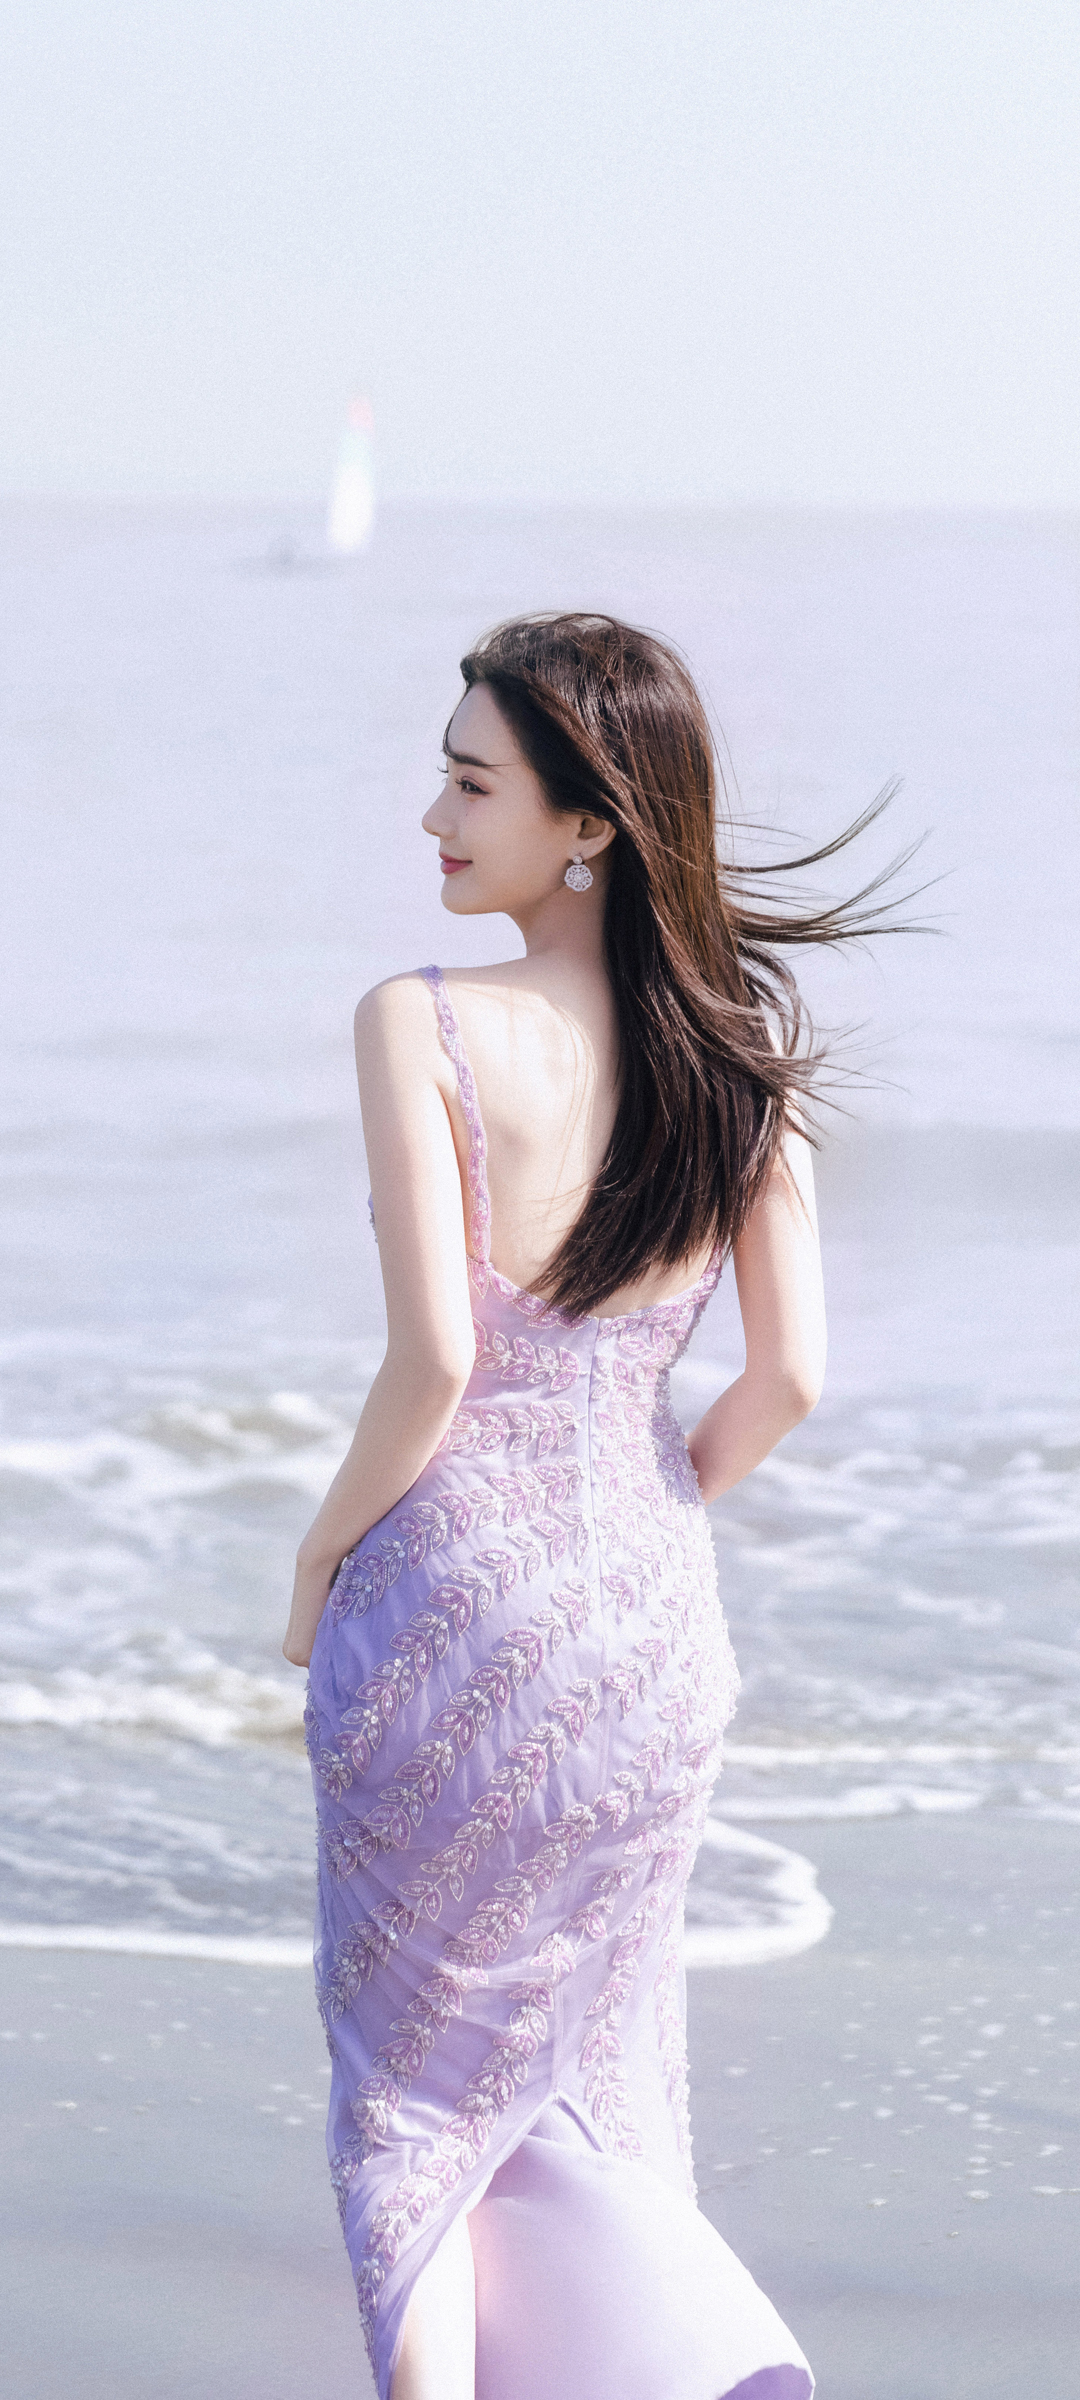 海边漂亮美女 李一桐 紫色裙子 背影 唯美 手机壁纸图片